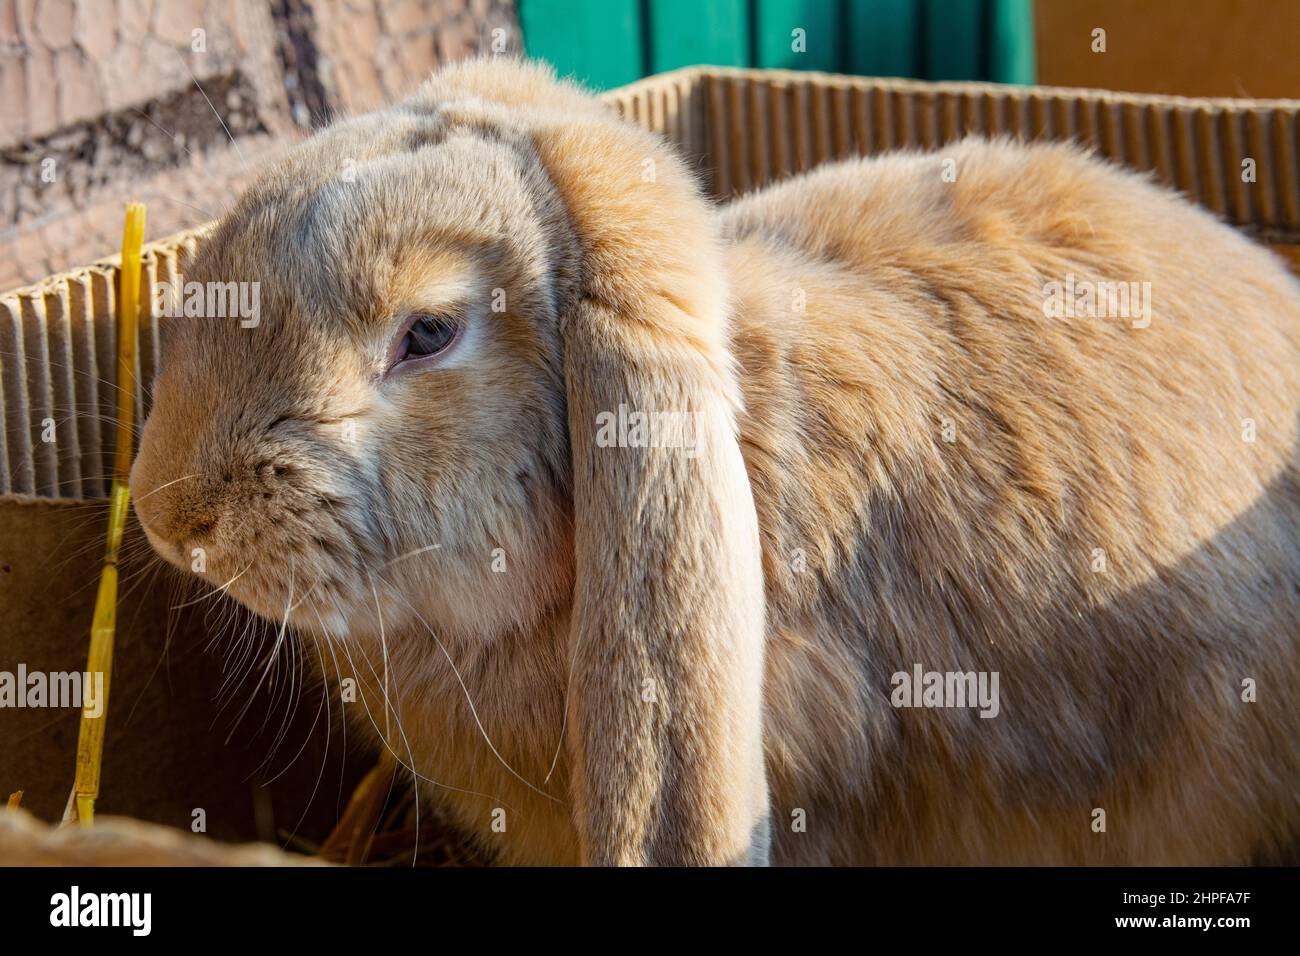 Kaninchen zum Verkauf auf dem Markt. Ein schönes Hauskaninchen mit braunen Haaren und hängenden Ohren sitzt in einem Karton. Stockfoto